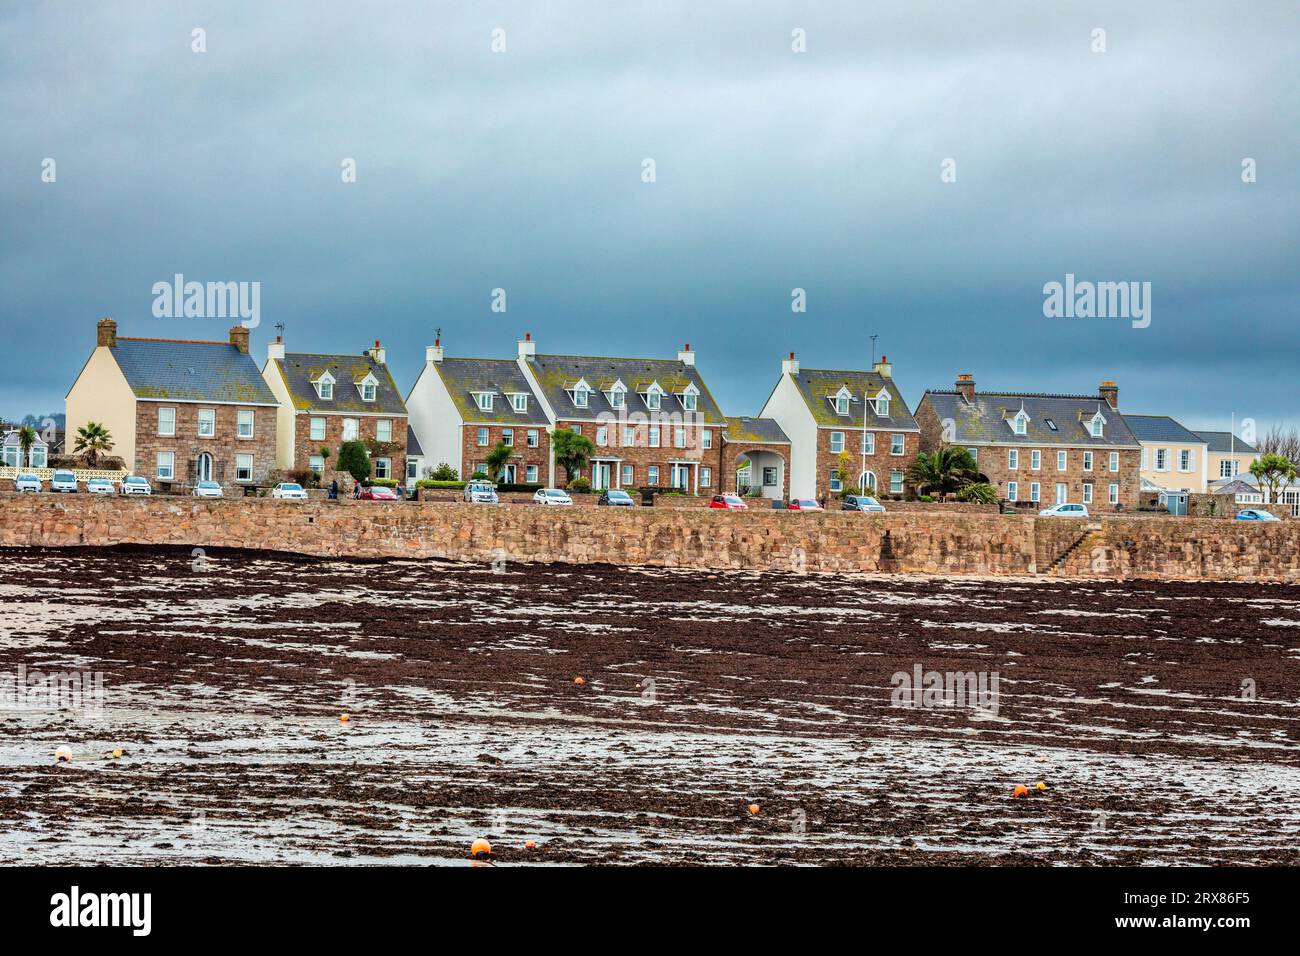 Maisons résidentielles sur le bord de mer de la Manche, dans le bailliage à marée basse de Jersey, îles Anglo-Normandes, Grande-Bretagne Banque D'Images